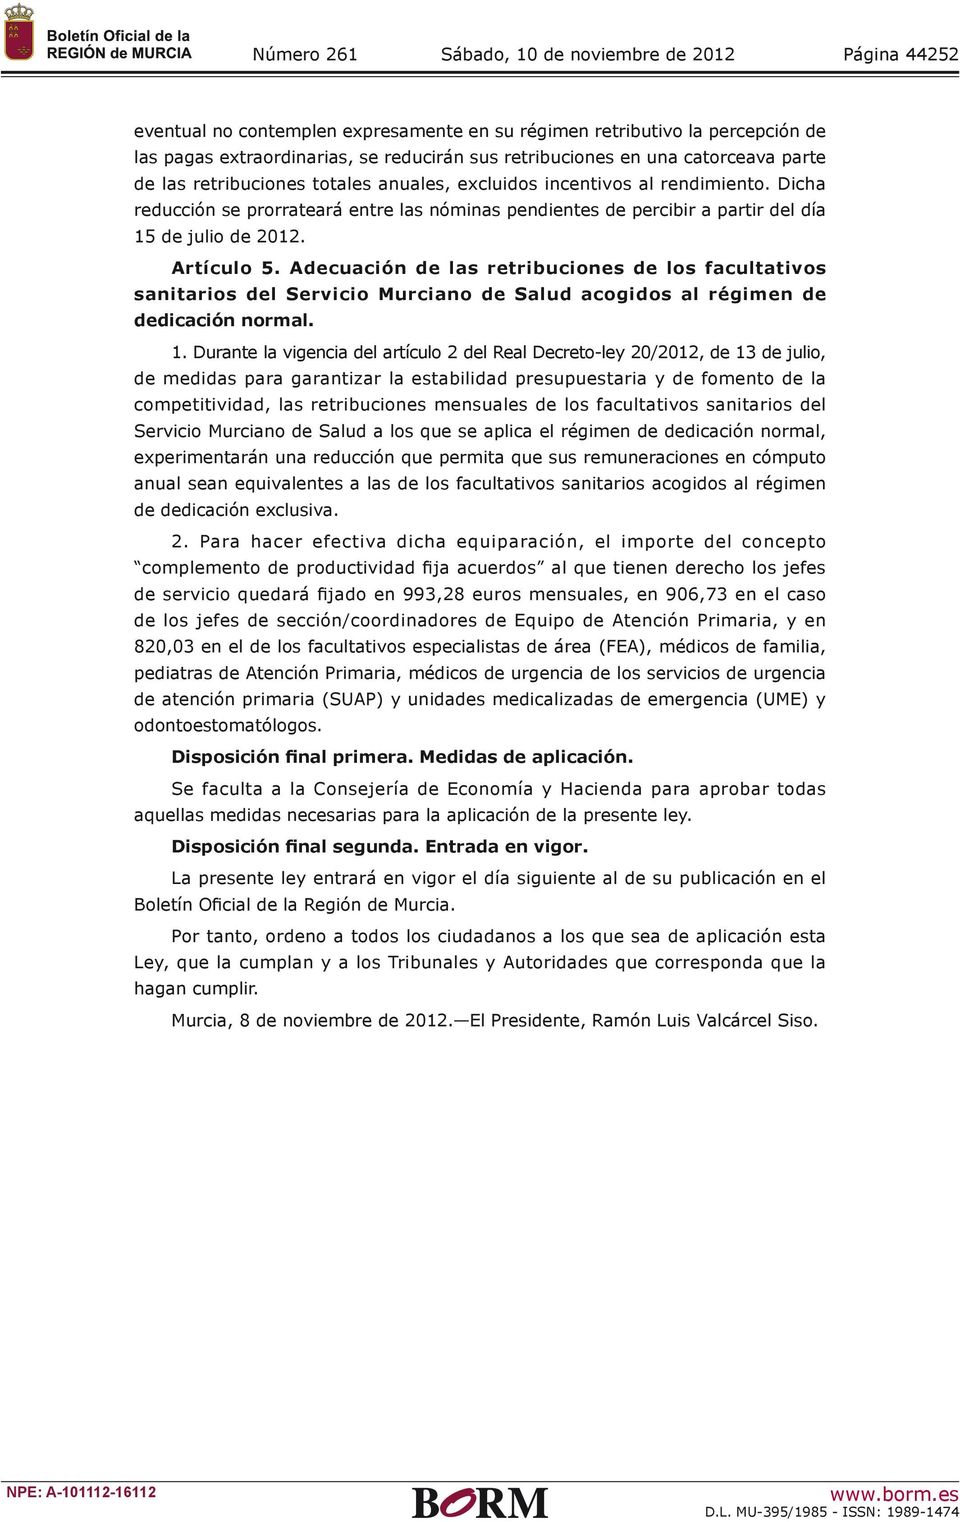 Adecuación de las retribuciones de los facultativos sanitarios del Servicio Murciano de Salud acogidos al régimen de dedicación normal. 1.